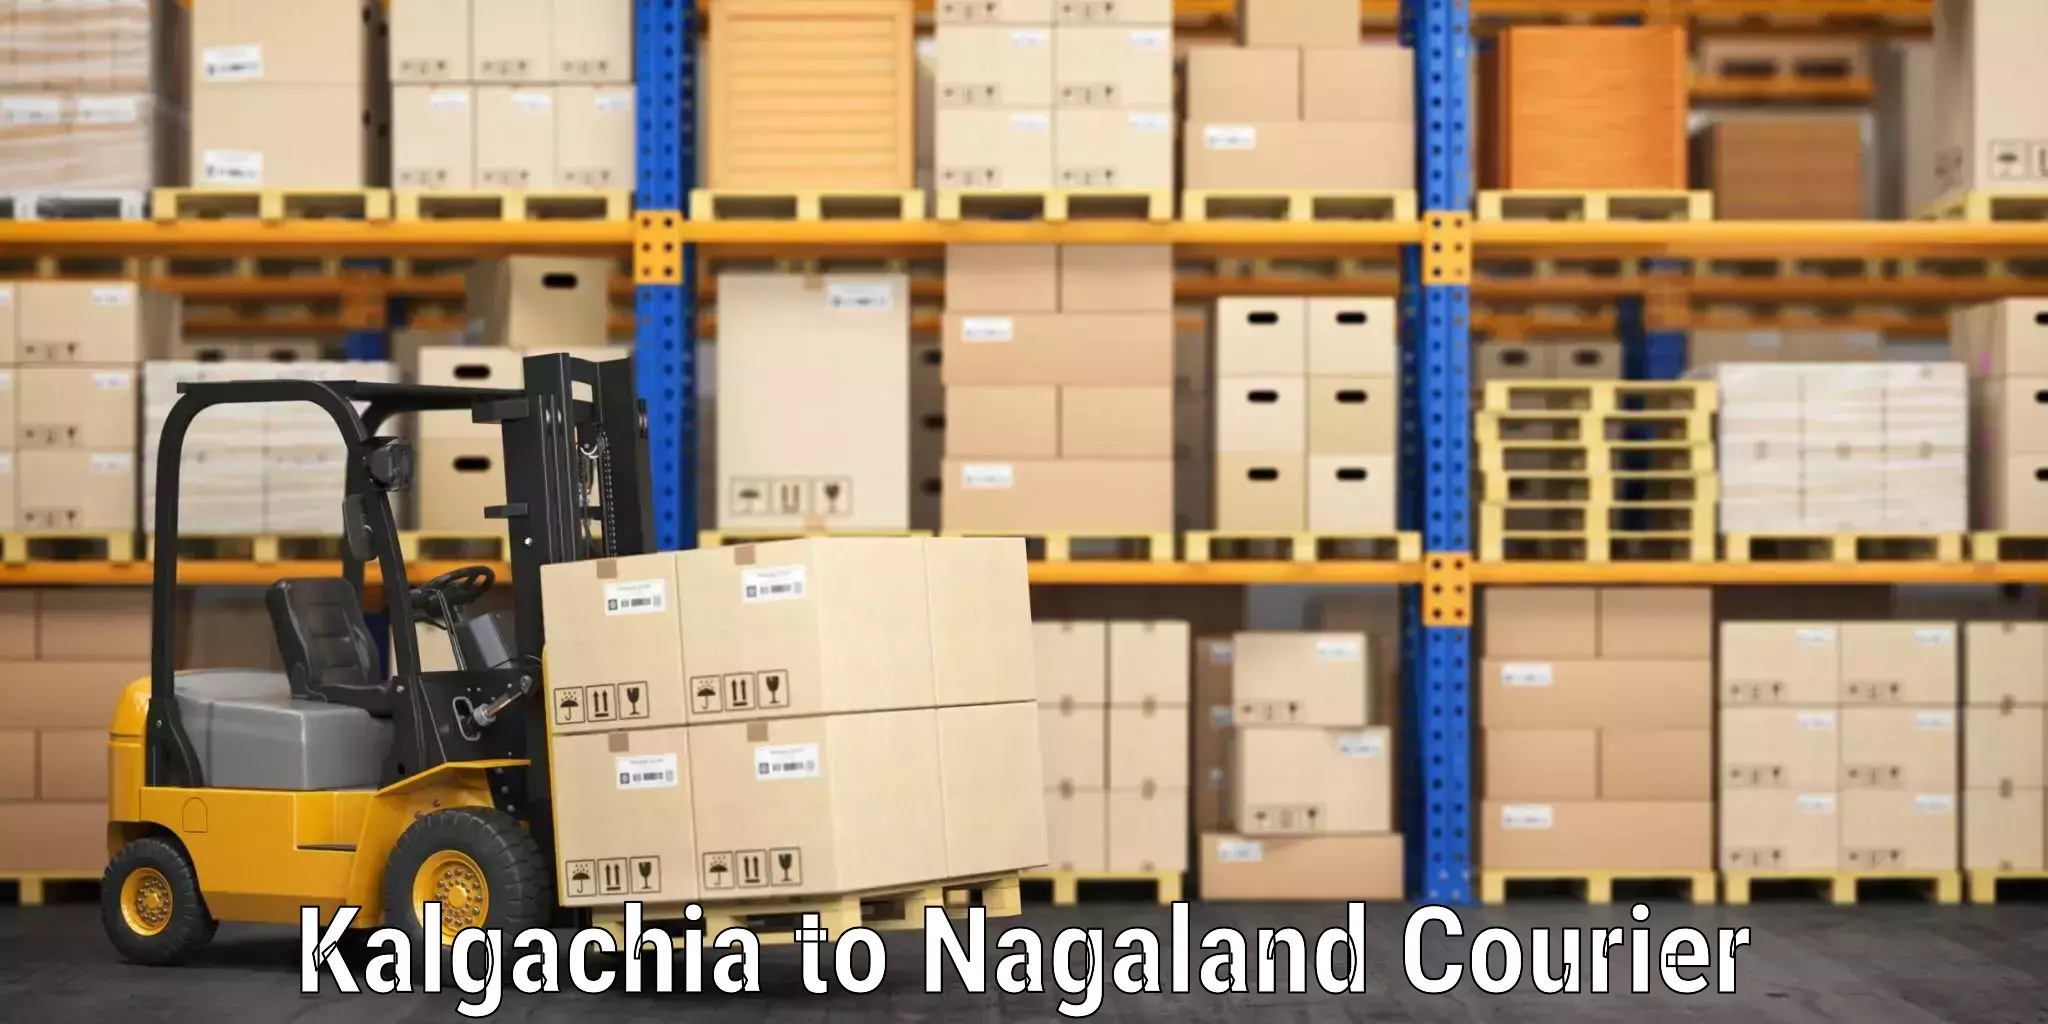 Automated luggage transport Kalgachia to Nagaland